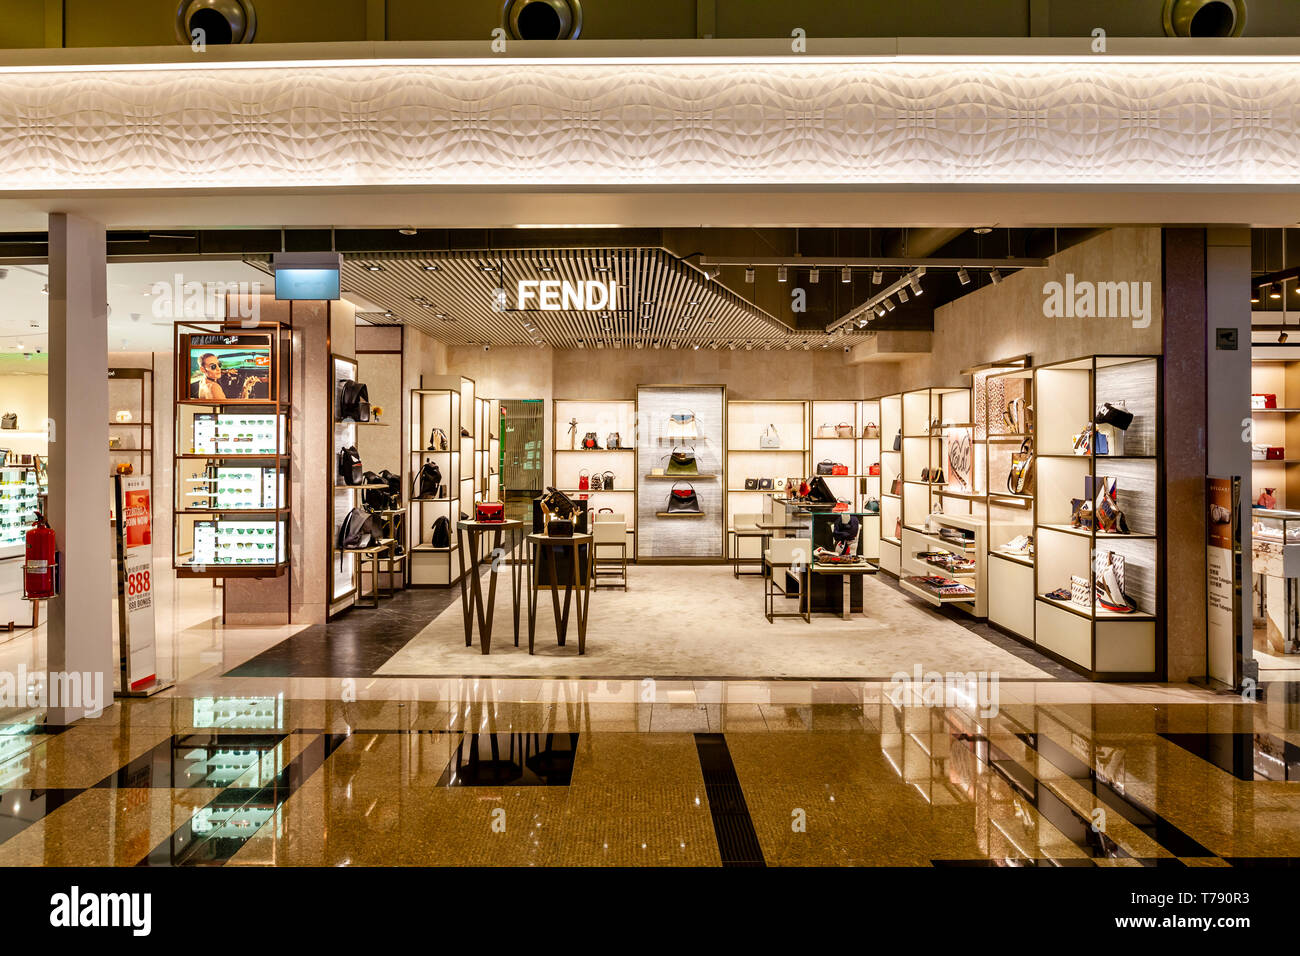 Die Fendi Store, exklusives Shopping, Changi Airport, Singapur, Südostasien Stockfoto